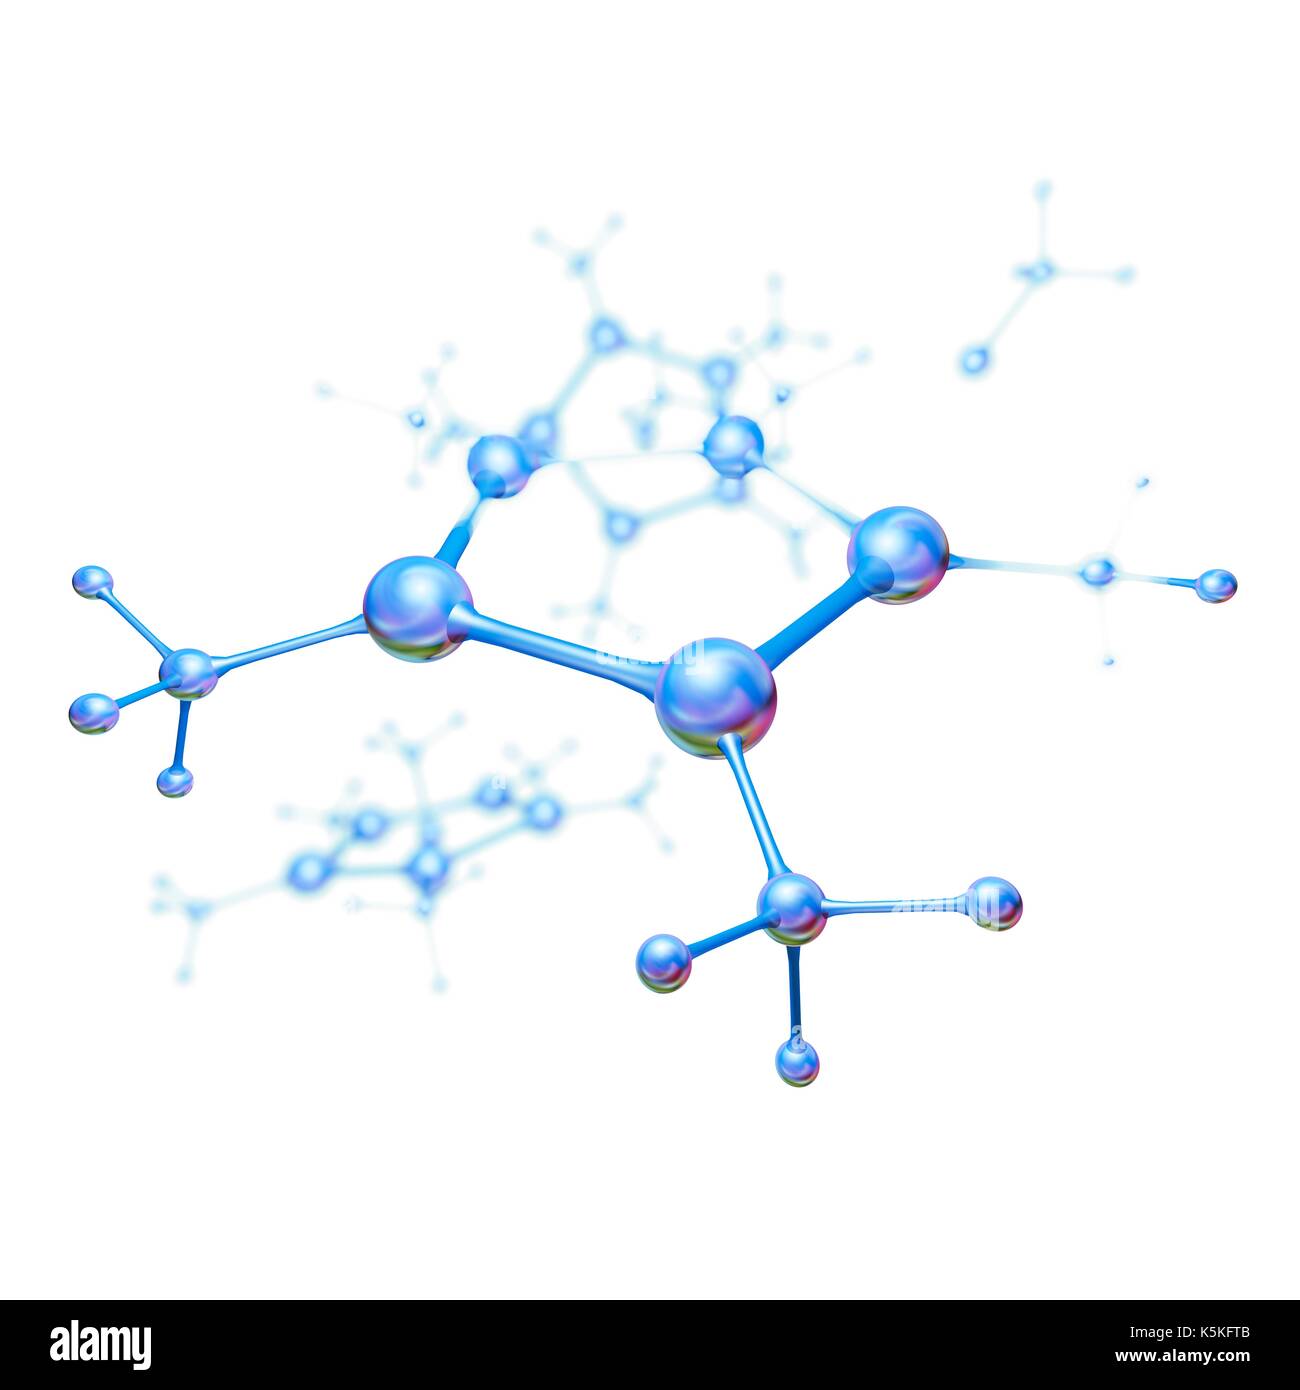 Abstrakte Molekülmodell, Illustration. Stockfoto